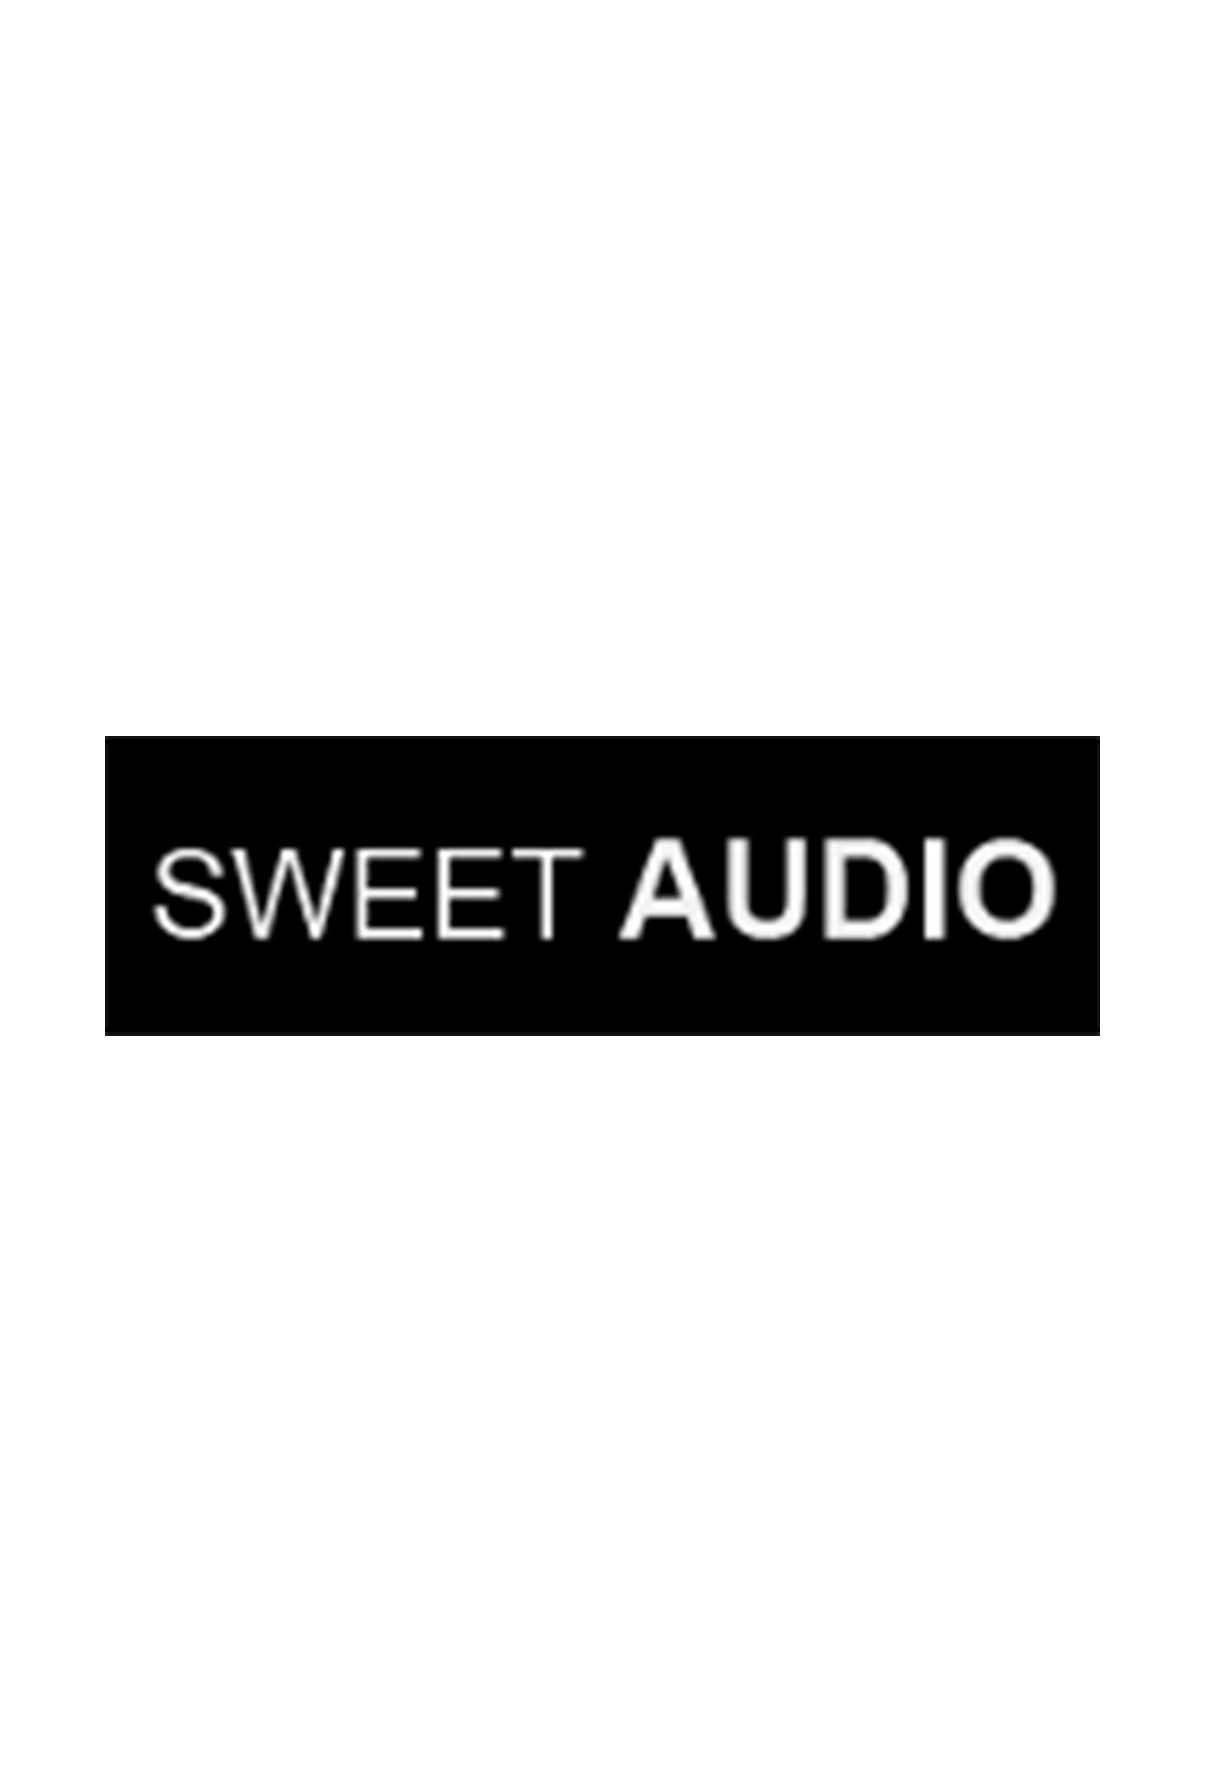 Sweet Audio